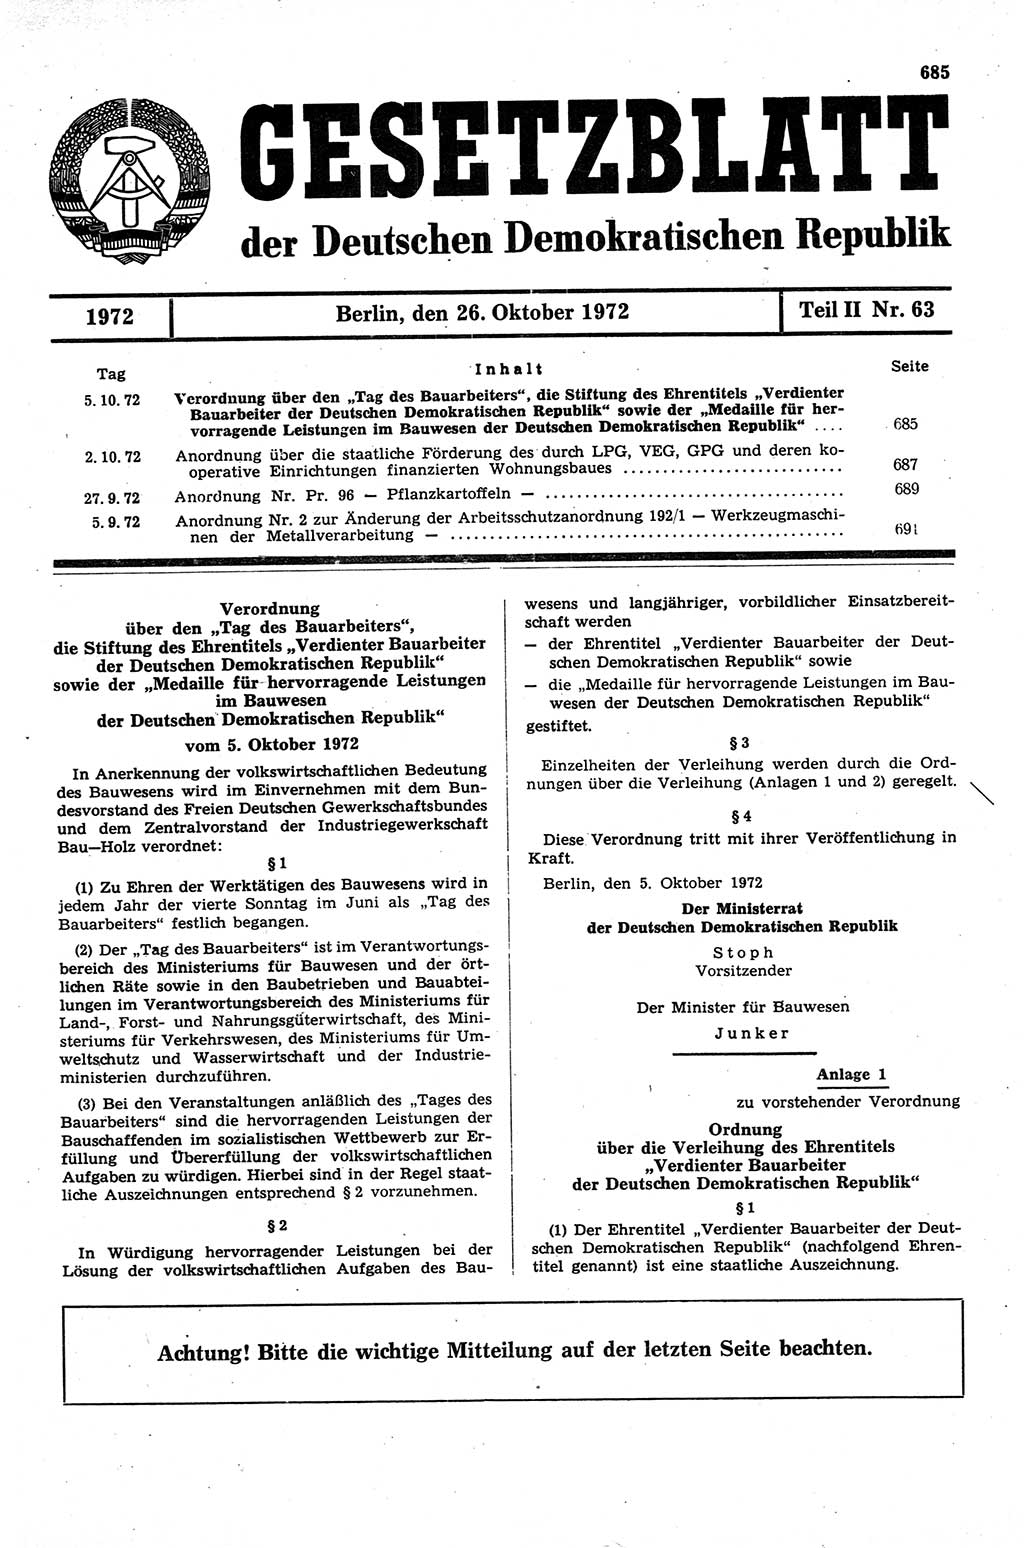 Gesetzblatt (GBl.) der Deutschen Demokratischen Republik (DDR) Teil ⅠⅠ 1972, Seite 685 (GBl. DDR ⅠⅠ 1972, S. 685)